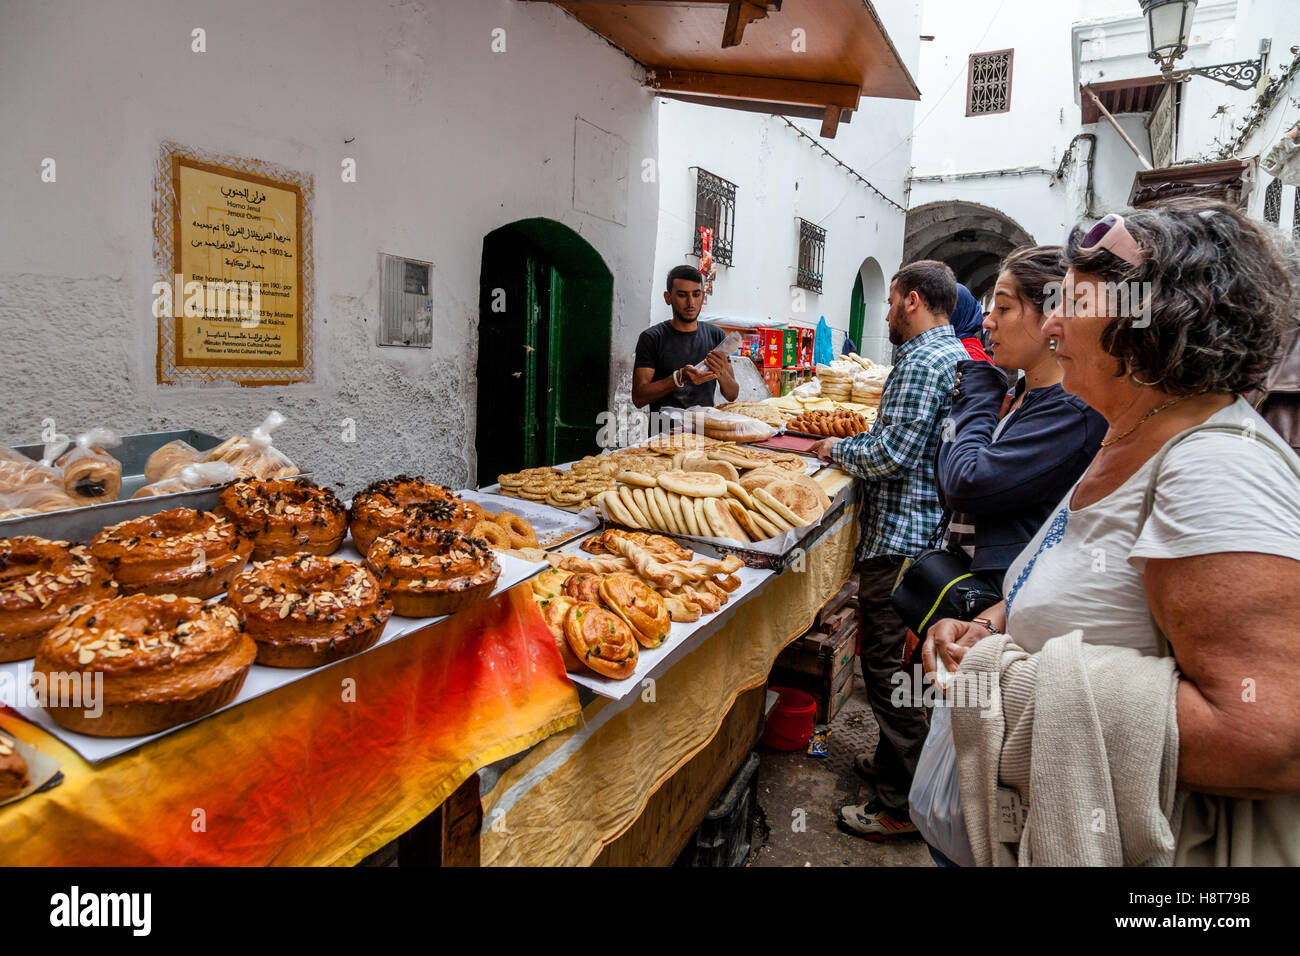 La population locale et les touristes la queue pour acheter du pain et viennoiseries d'une boulangerie dans la médina, Tétouan, Maroc Banque D'Images